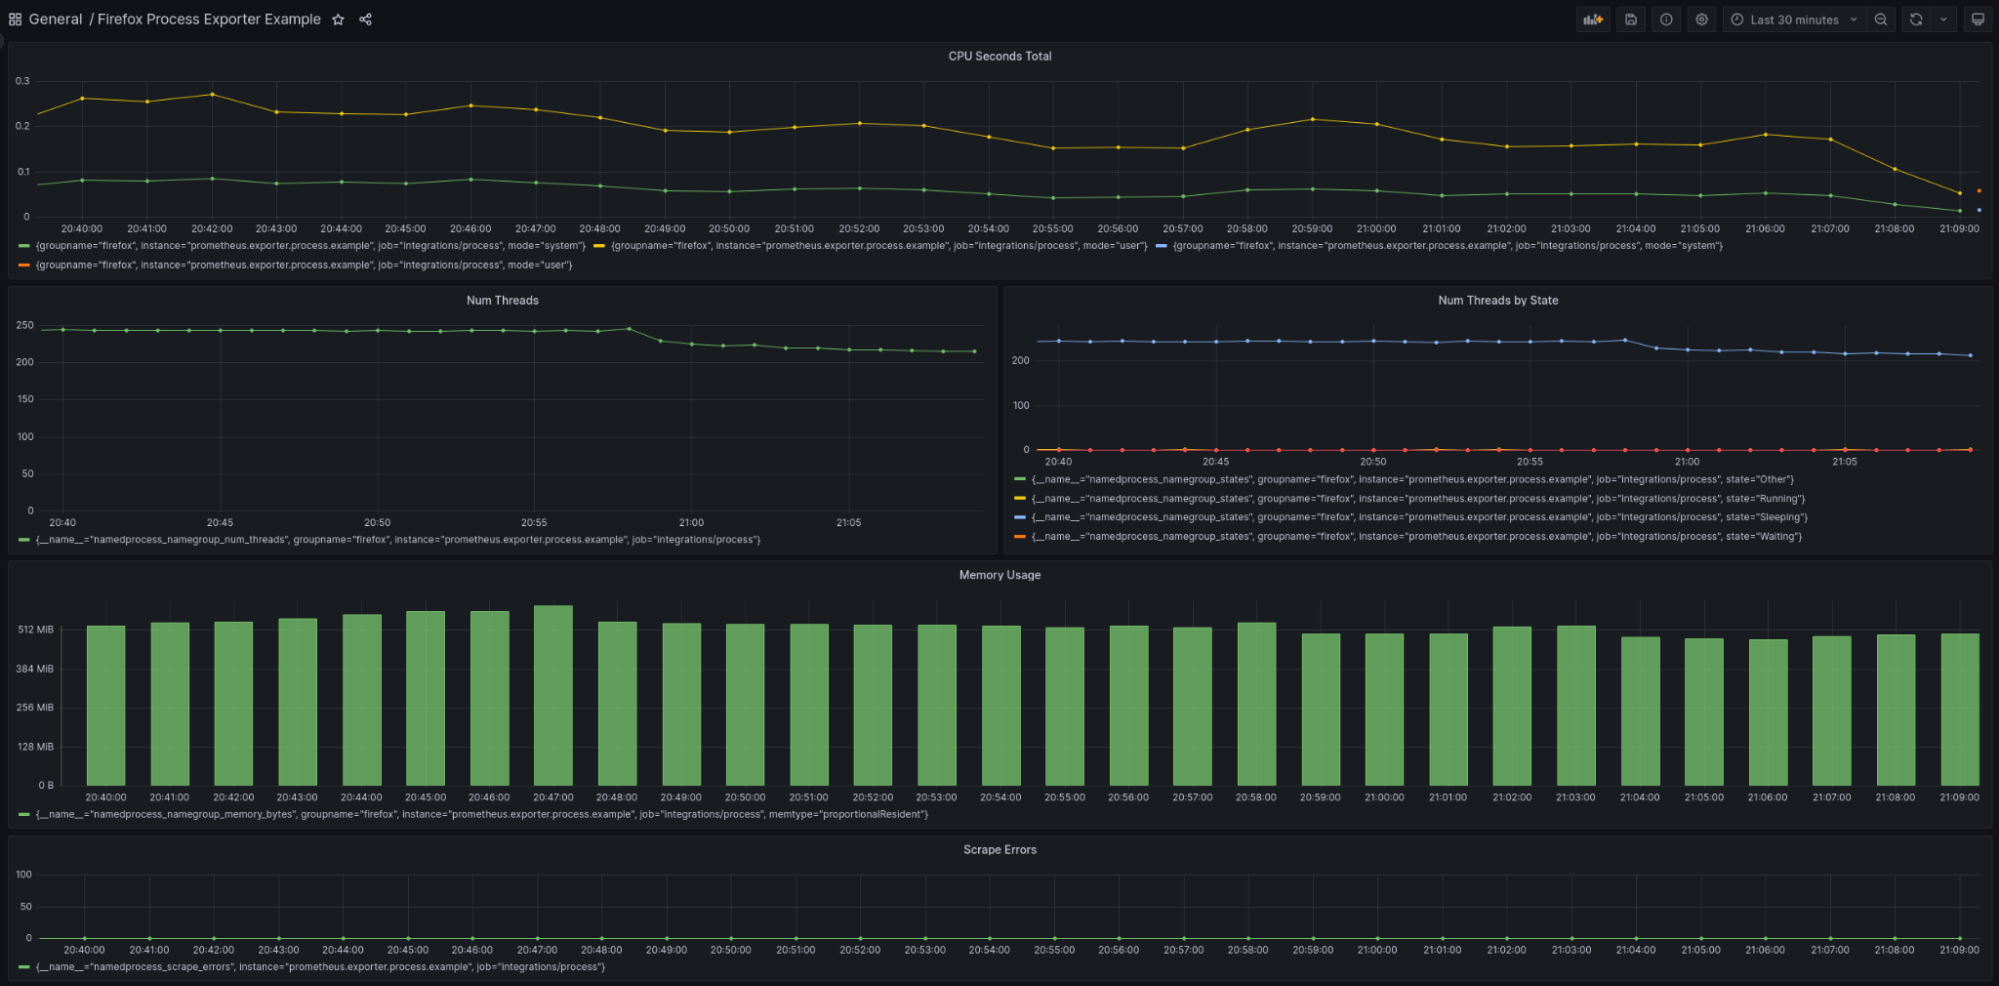 Grafana dashboard showing Firefox system usage